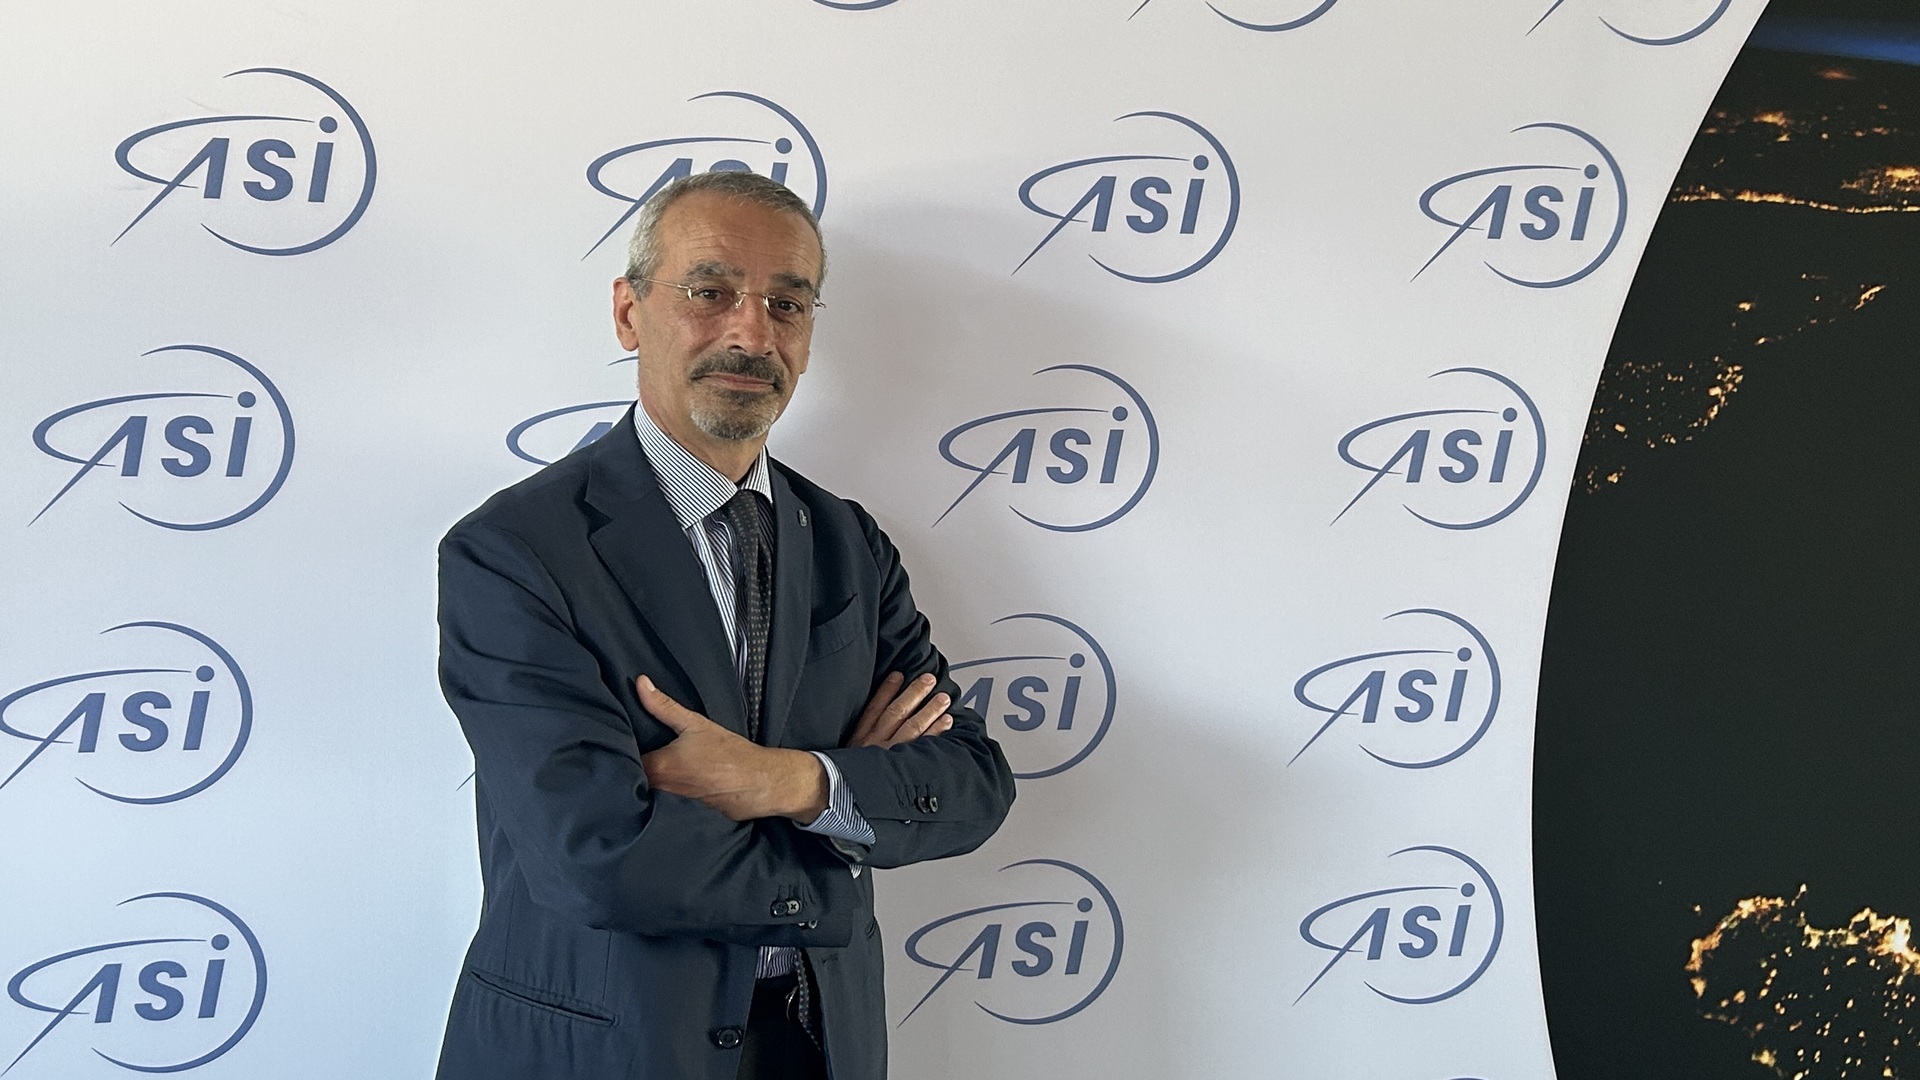 ASI - Il nuovo presidente dell’Agenzia Spaziale Italiana, Teodoro Valente, si è insediato